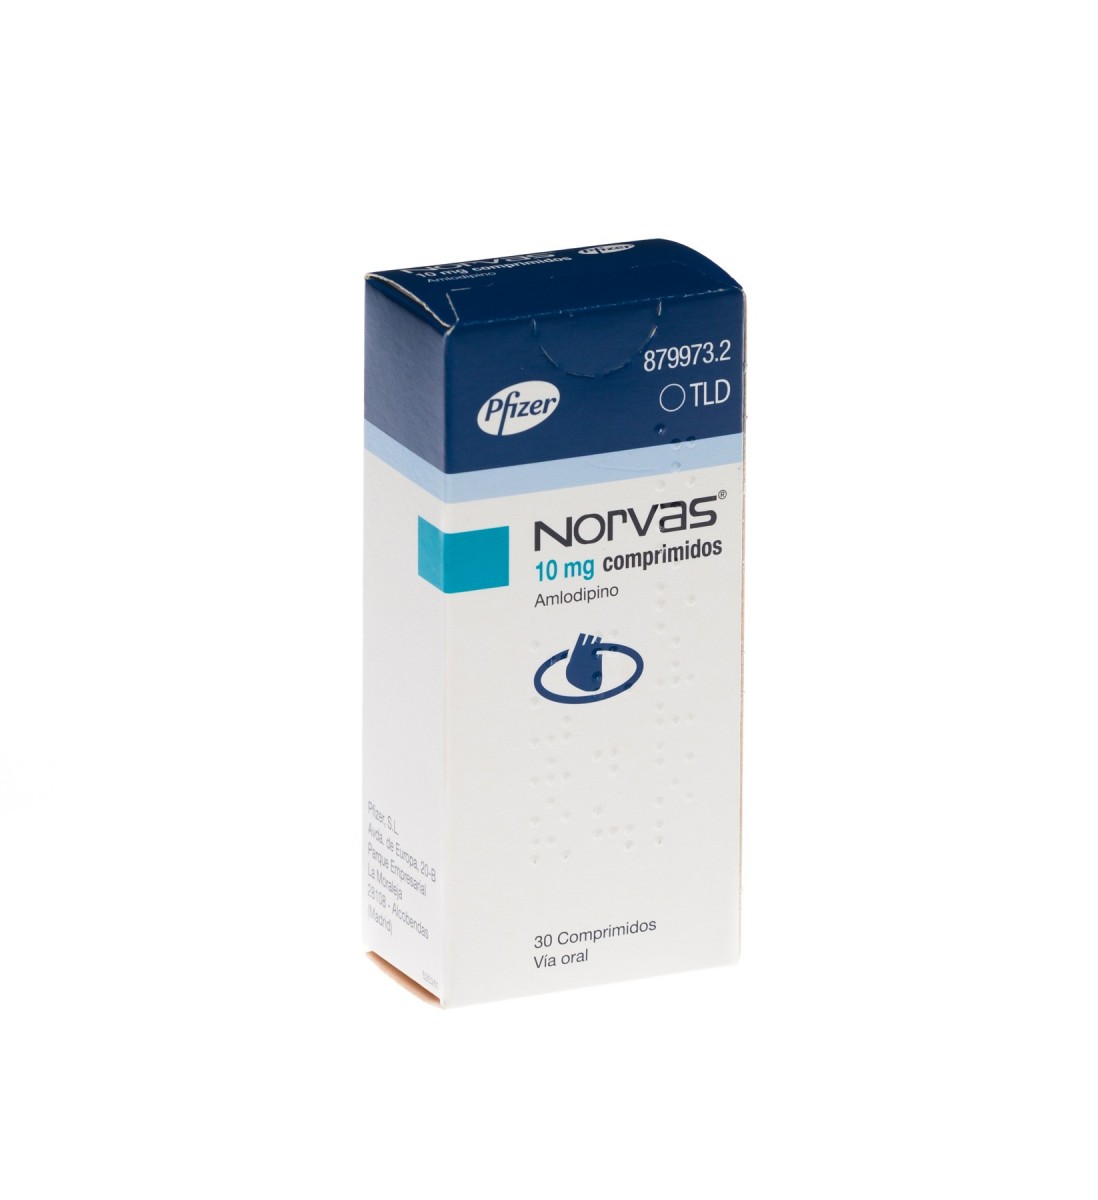 NORVAS 10 mg COMPRIMIDOS, 500 comprimidos fotografía del envase.